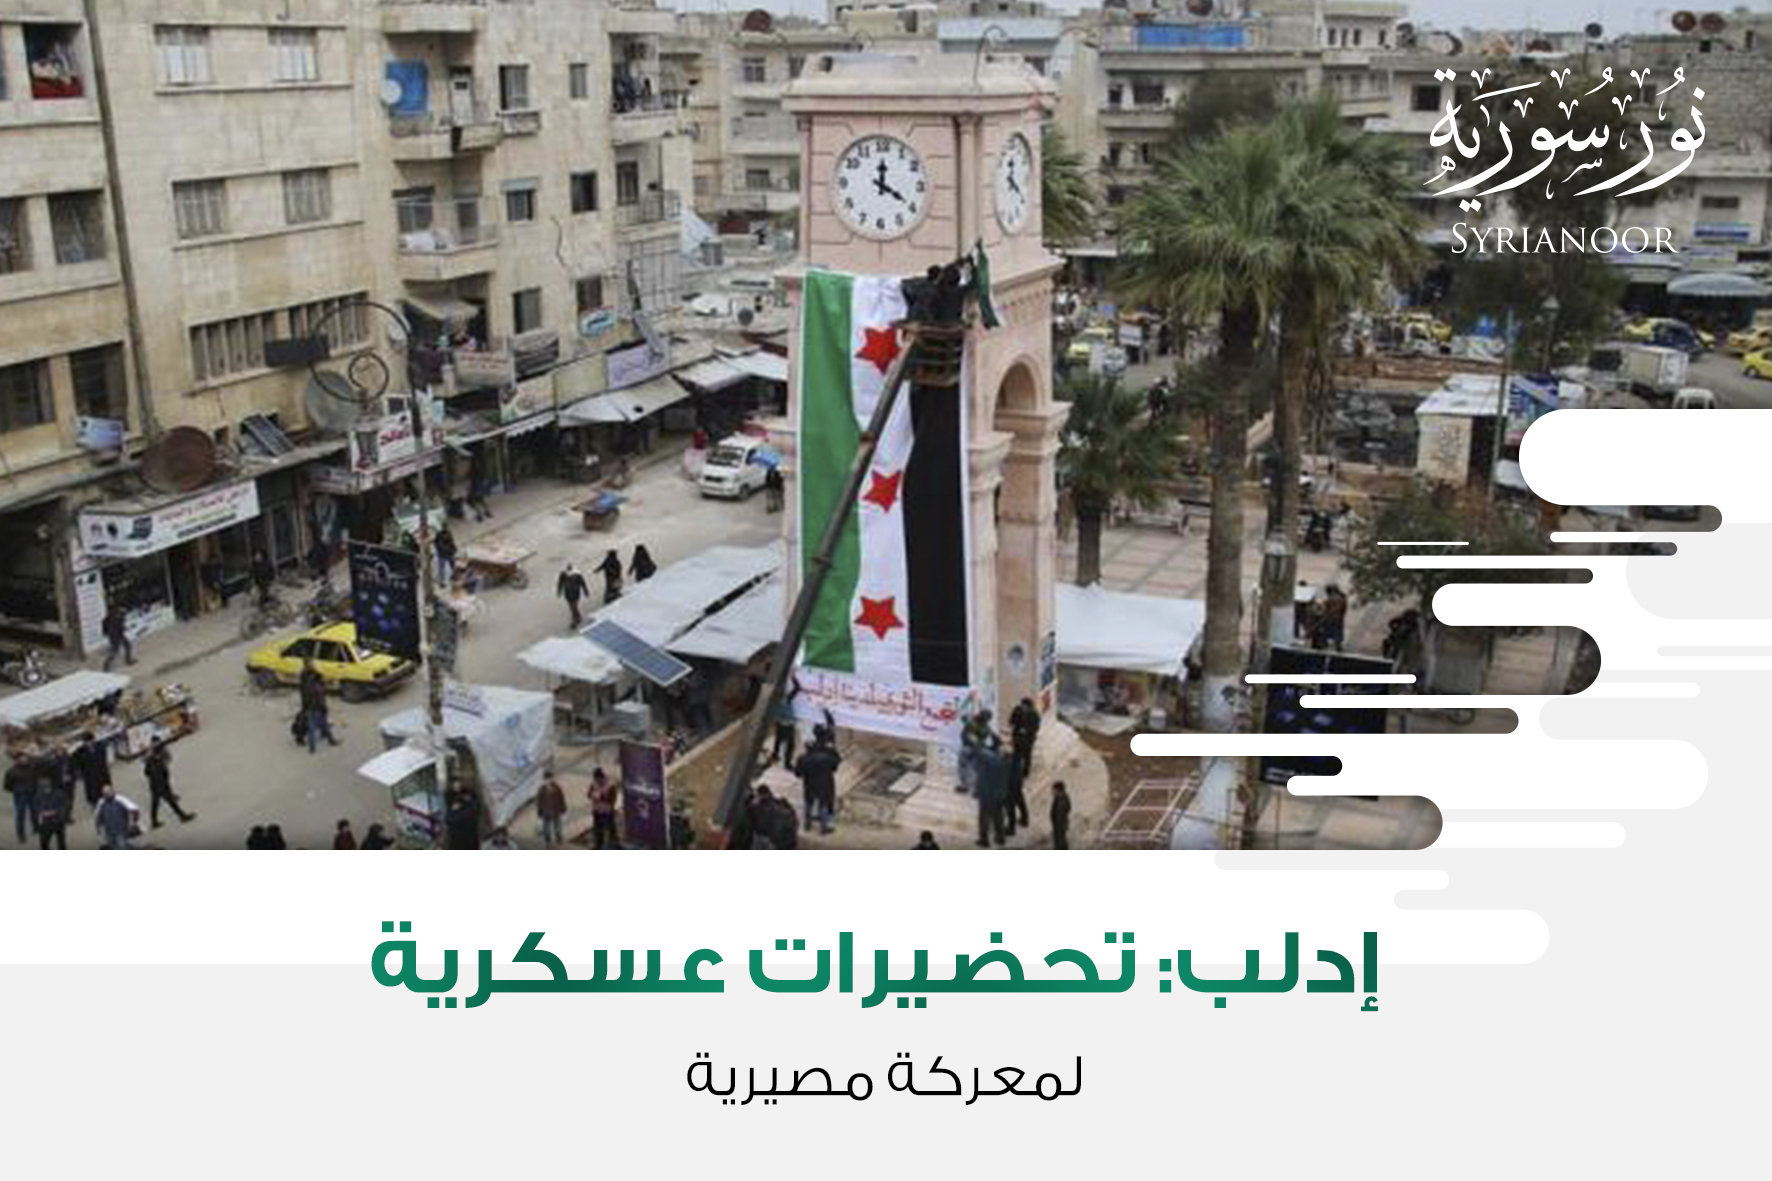 إدلب: تحضيرات عسكرية لمعركة مصيرية